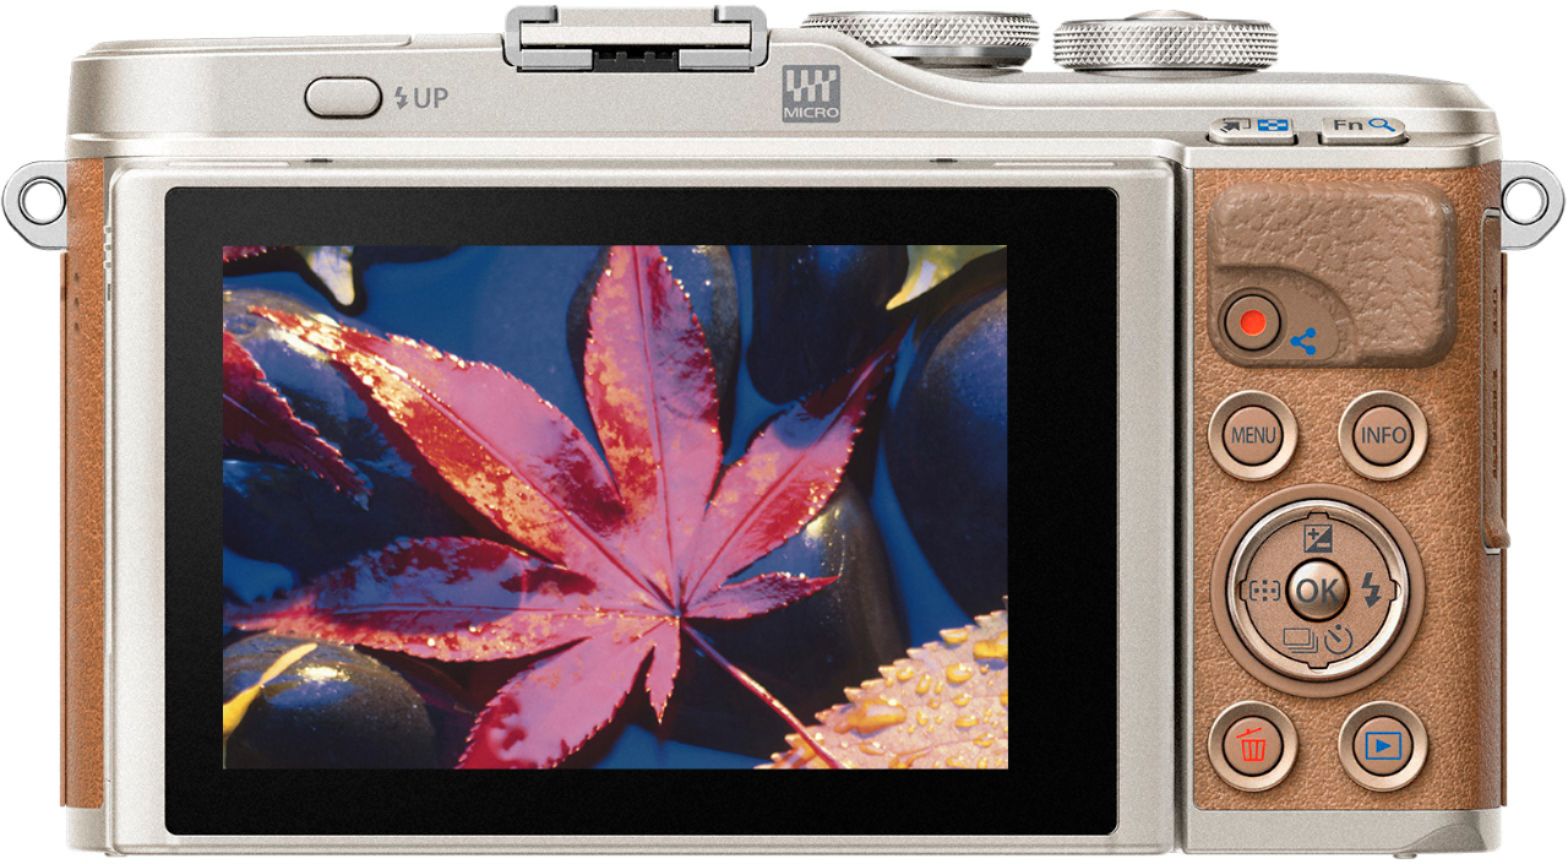 カメラ デジタルカメラ Best Buy: Olympus PEN E-PL9 Mirrorless Camera with 14-42mm Lens 